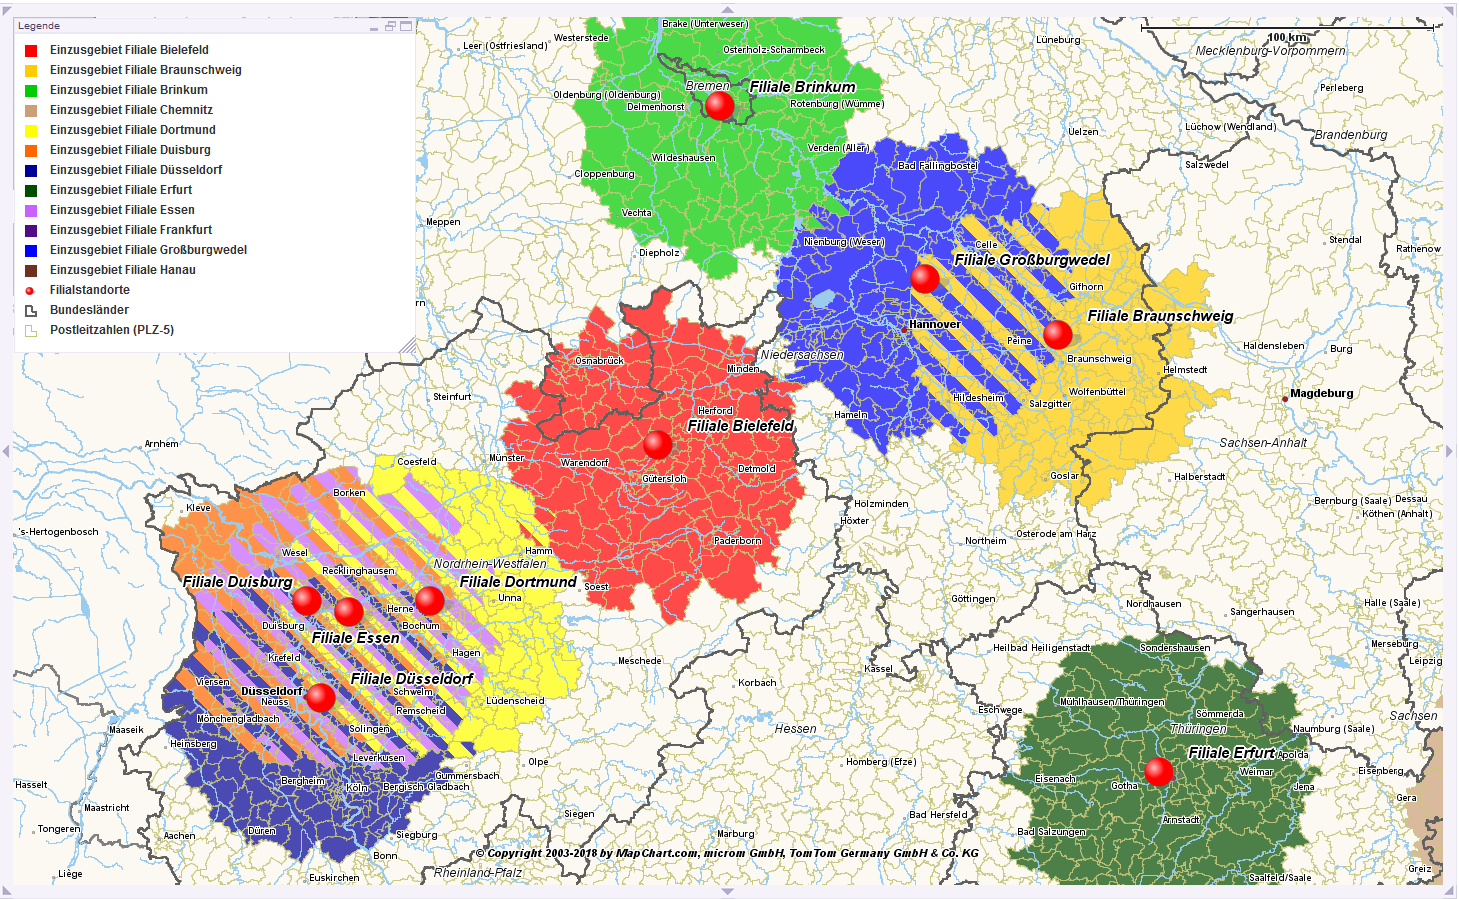 Karte mit Niederlassungen in mehreren deutschen Städten, dargestellt in einzelnen Farben. Es werden auch Zweigstellen, Bundesländer und Postleitzahlen mit den entsprechenden Symbolen angezeigt